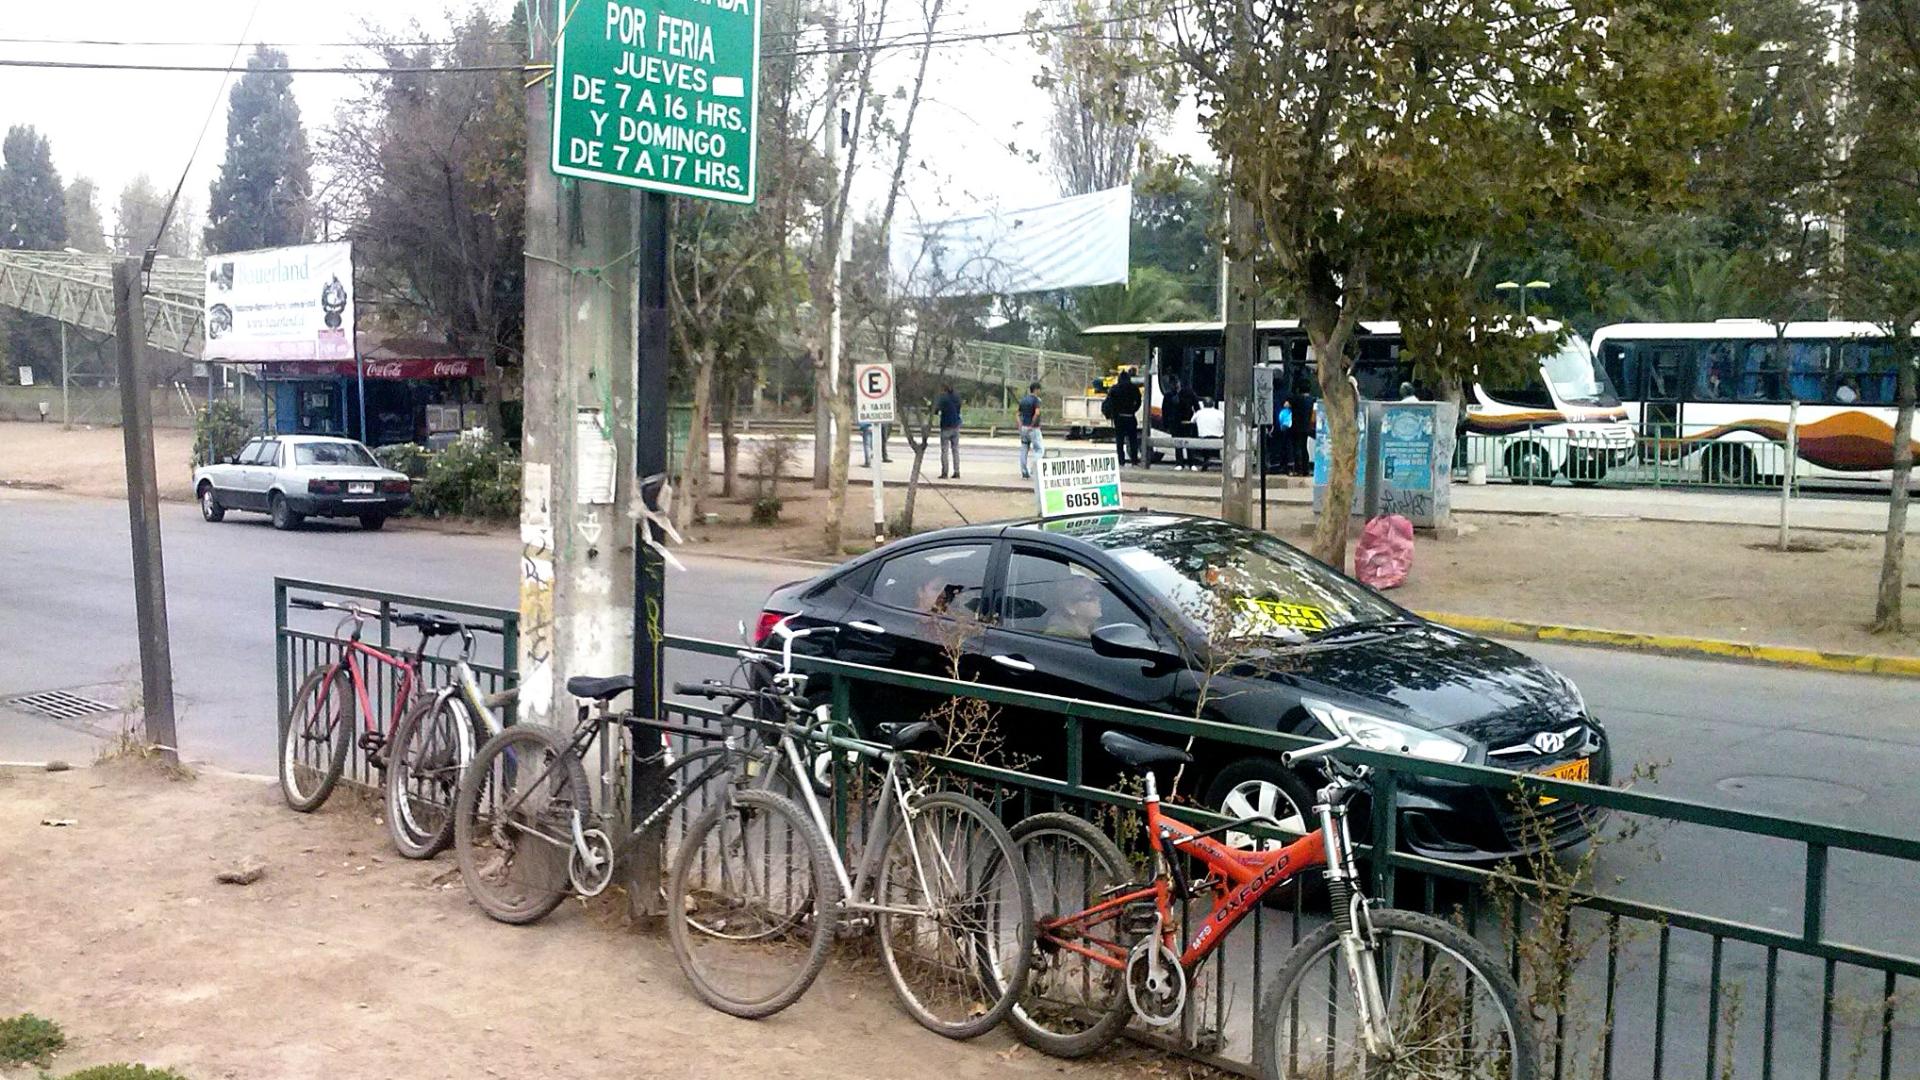 "A las afueras de Ciudad Satélite Maipú ciclistas improvisan biciestacionamiento y continúan viaje en transporte público"